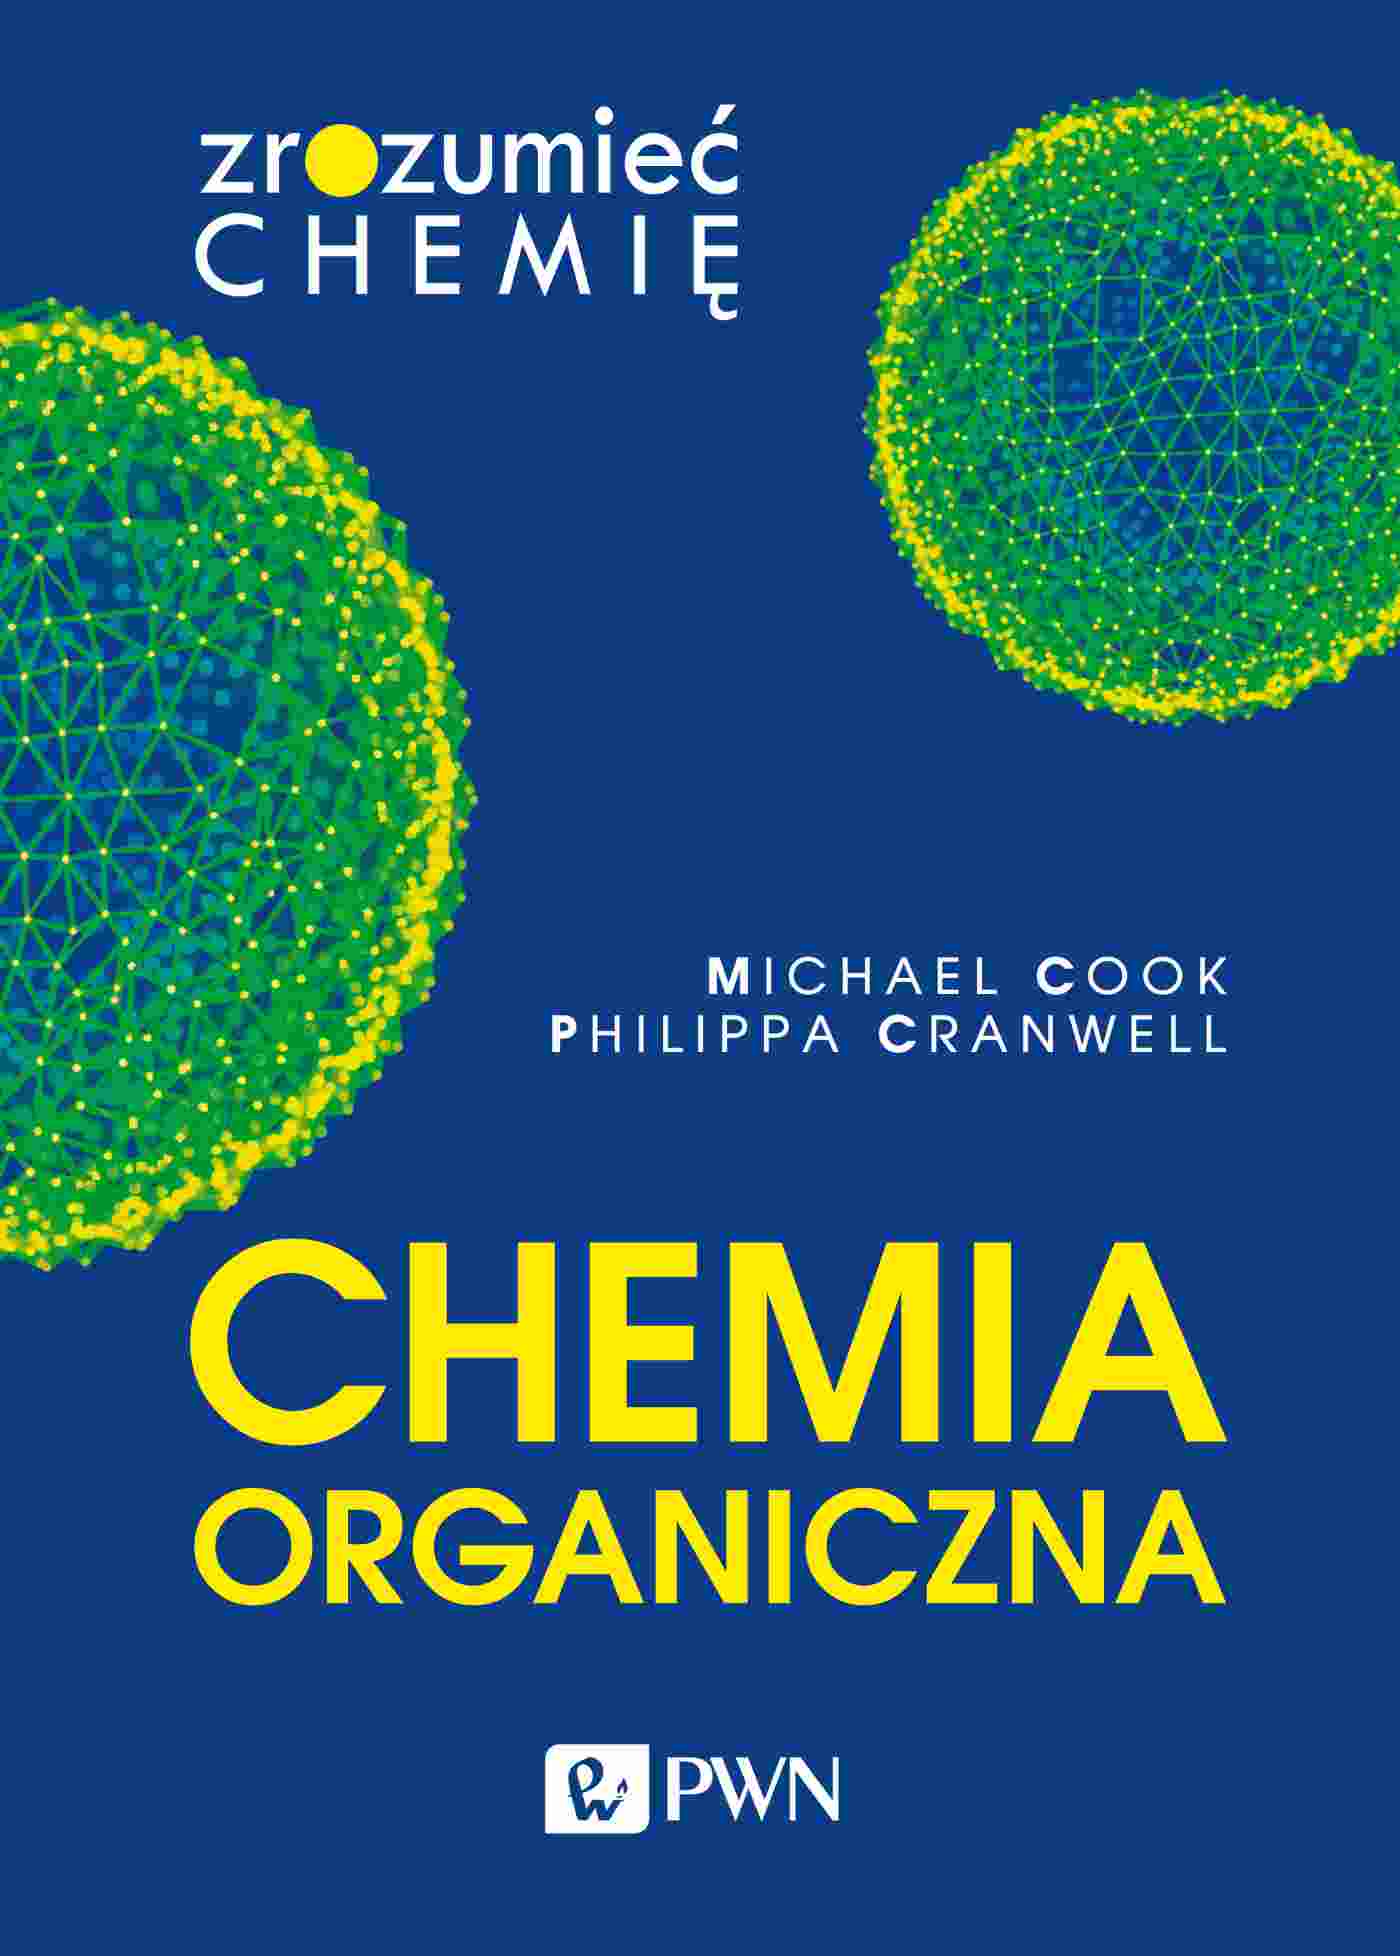 Kniha Chemia organiczna. Zrozumieć chemię Michael Cook